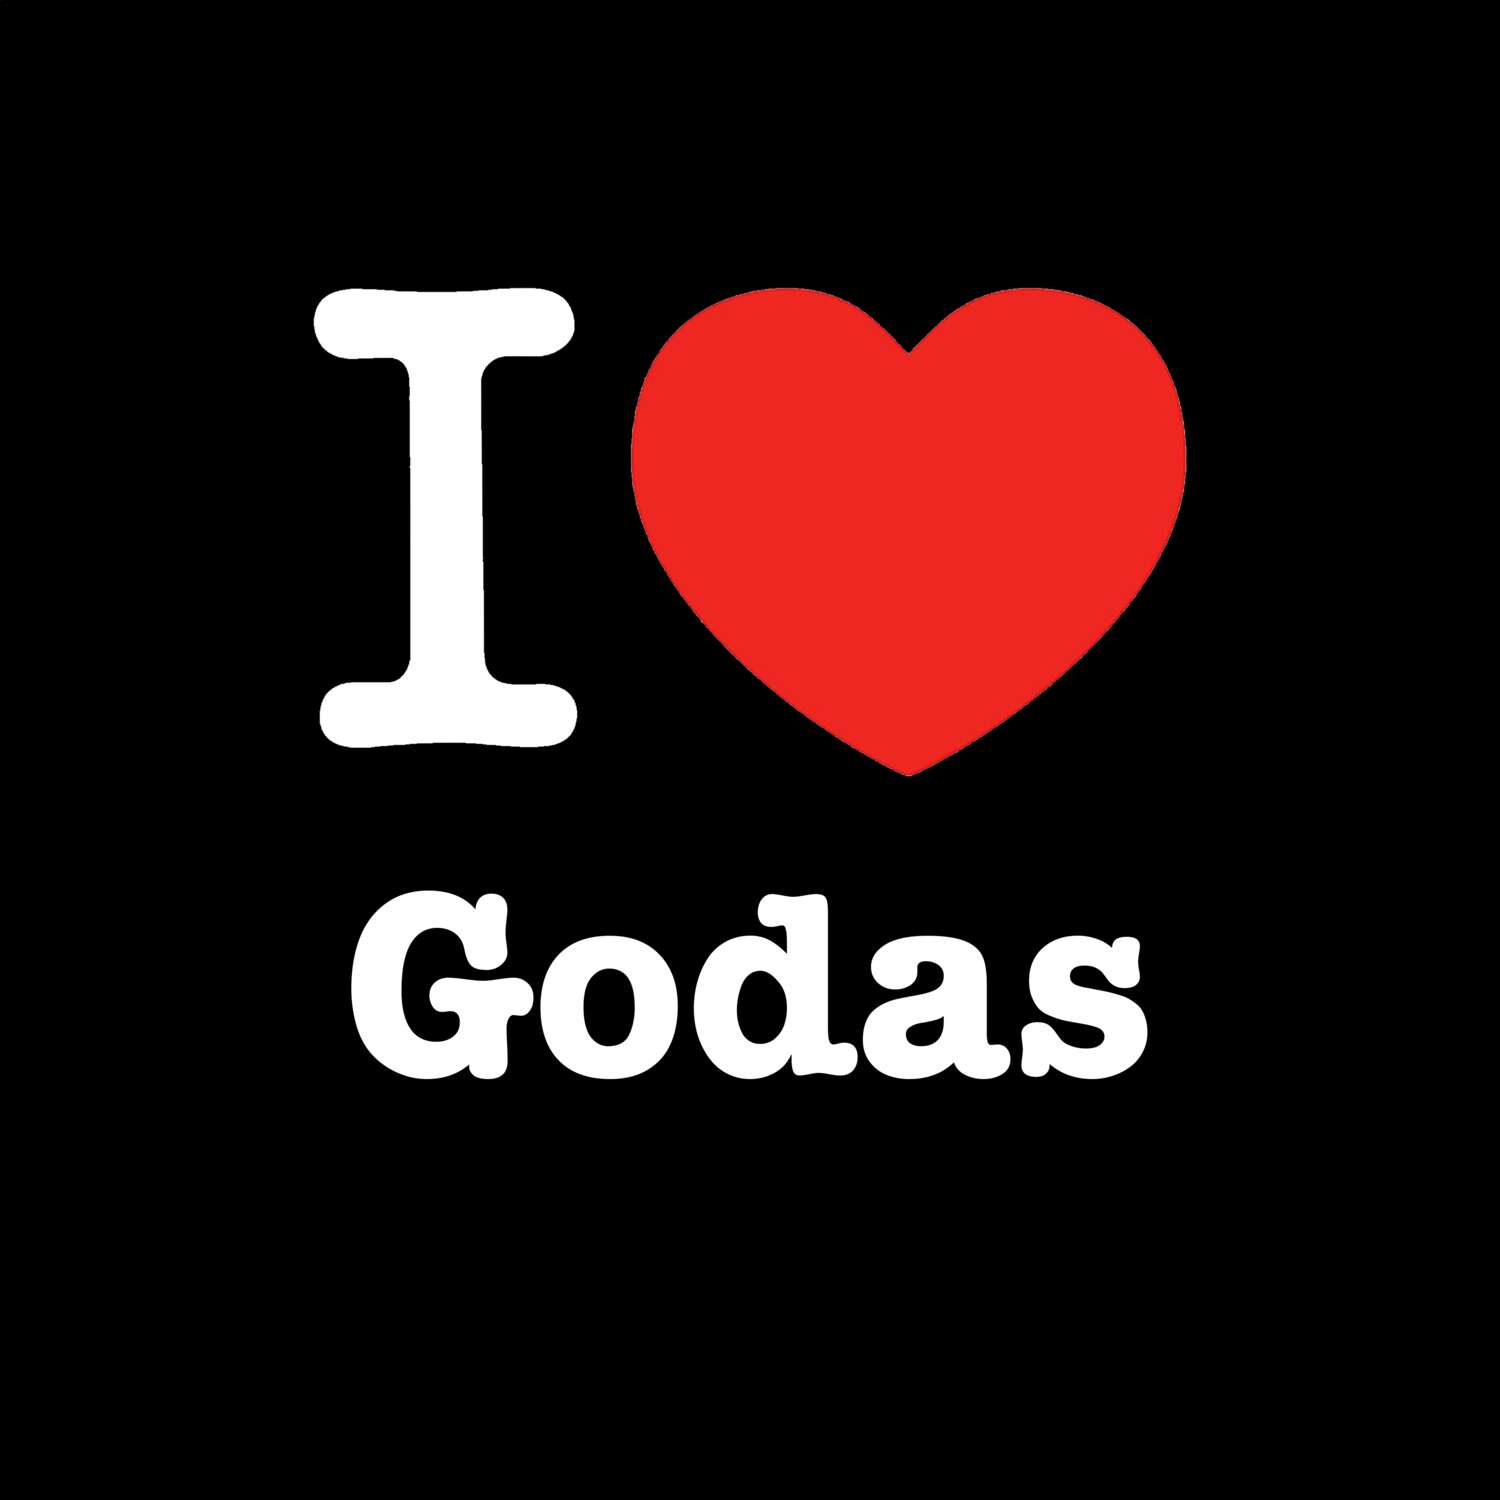 Godas T-Shirt »I love«